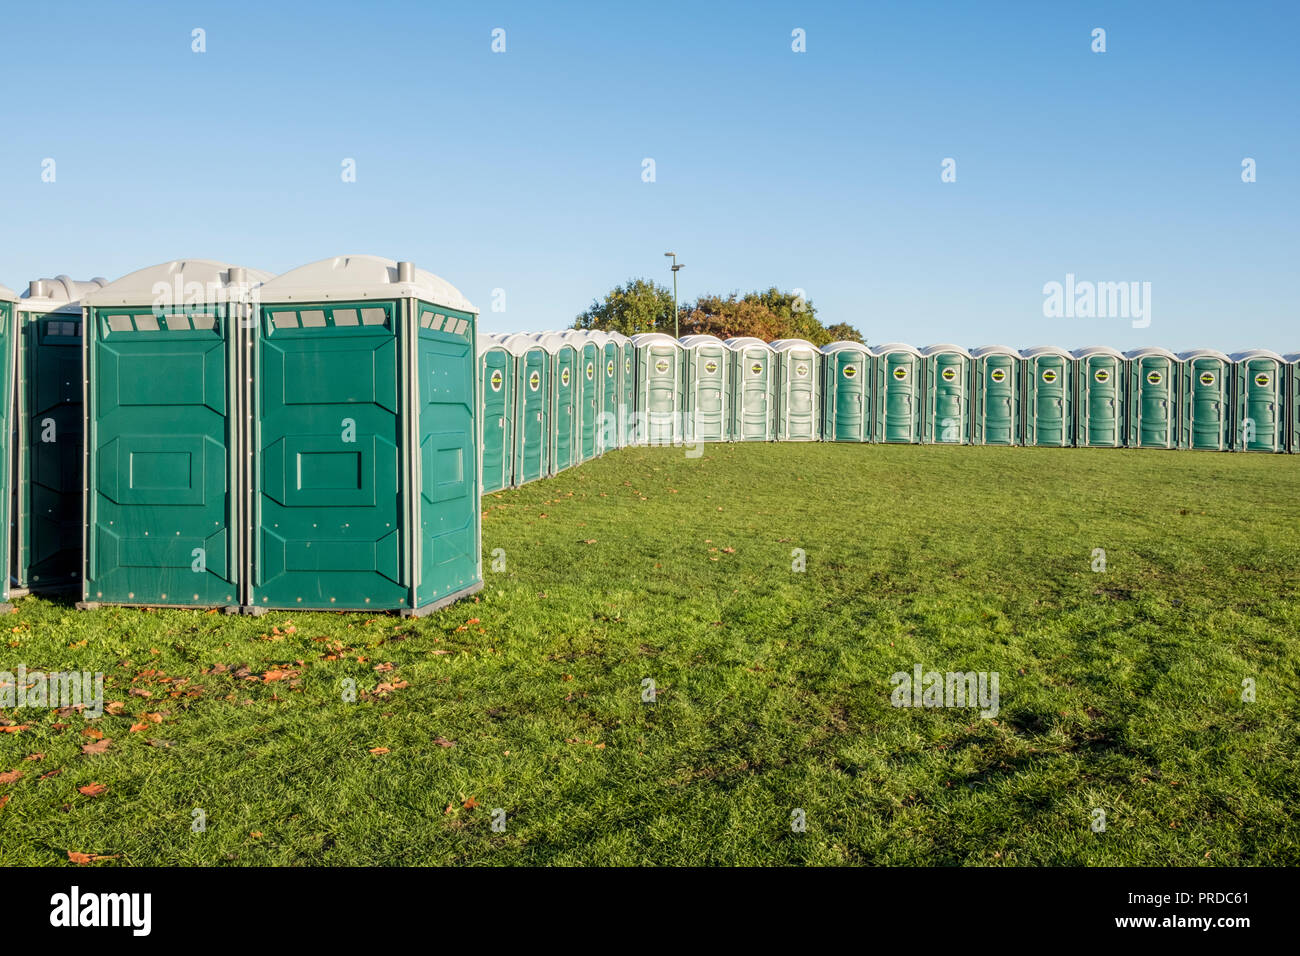 Eine Reihe von provisorischen toilettenkabinen. Viele tragbare Toiletten auf einem Feld, Nottingham, England, Großbritannien Stockfoto